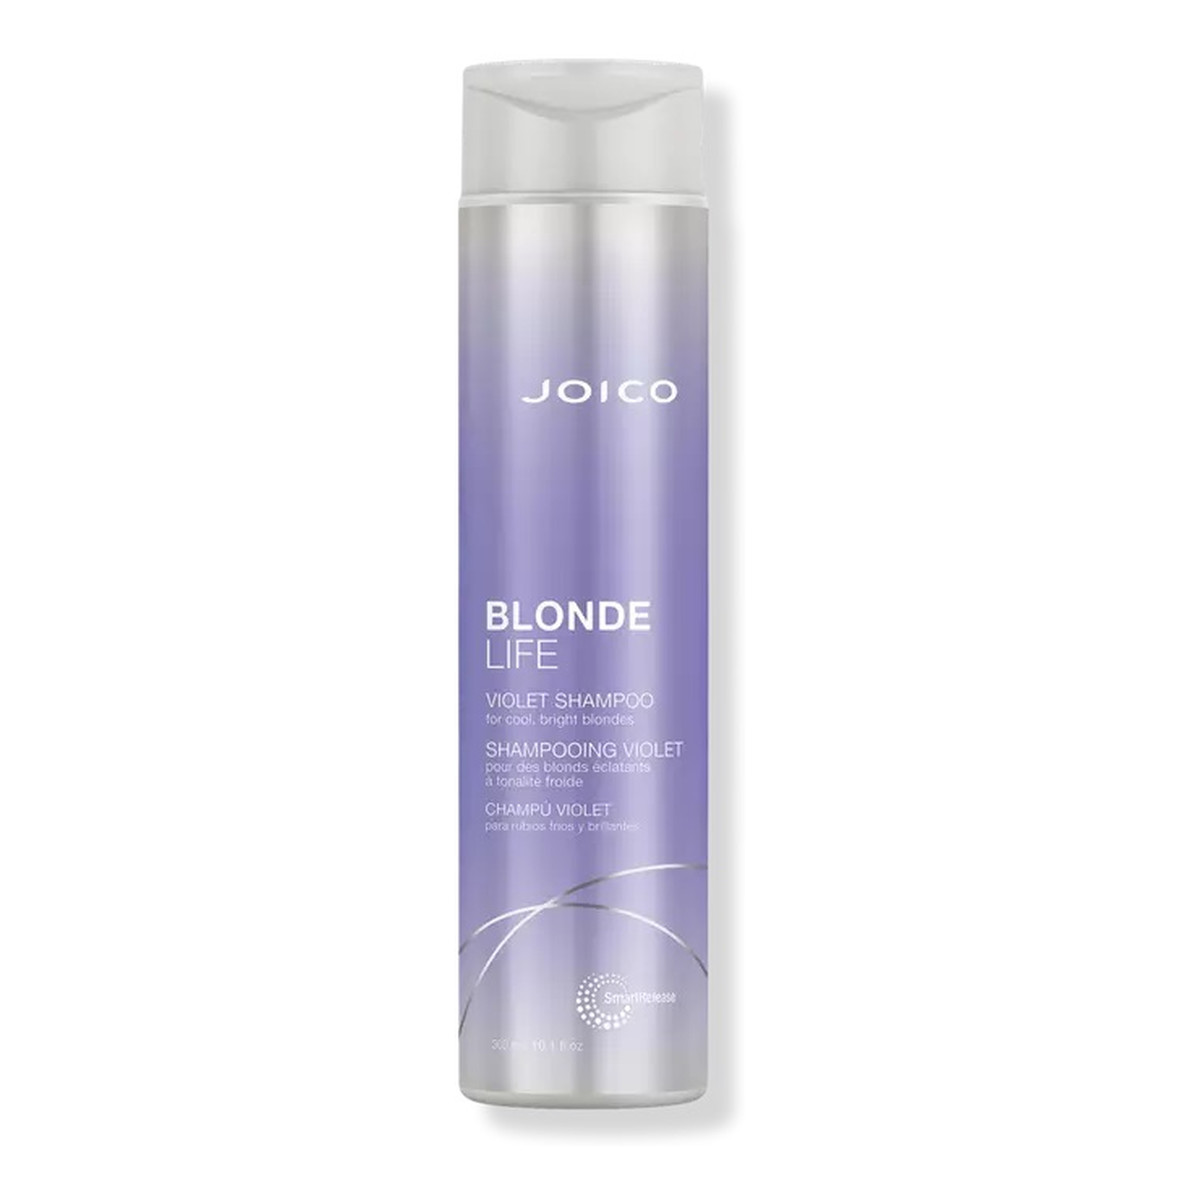 Joico Blonde life violet shampoo fioletowy szampon do włosów blond 300ml